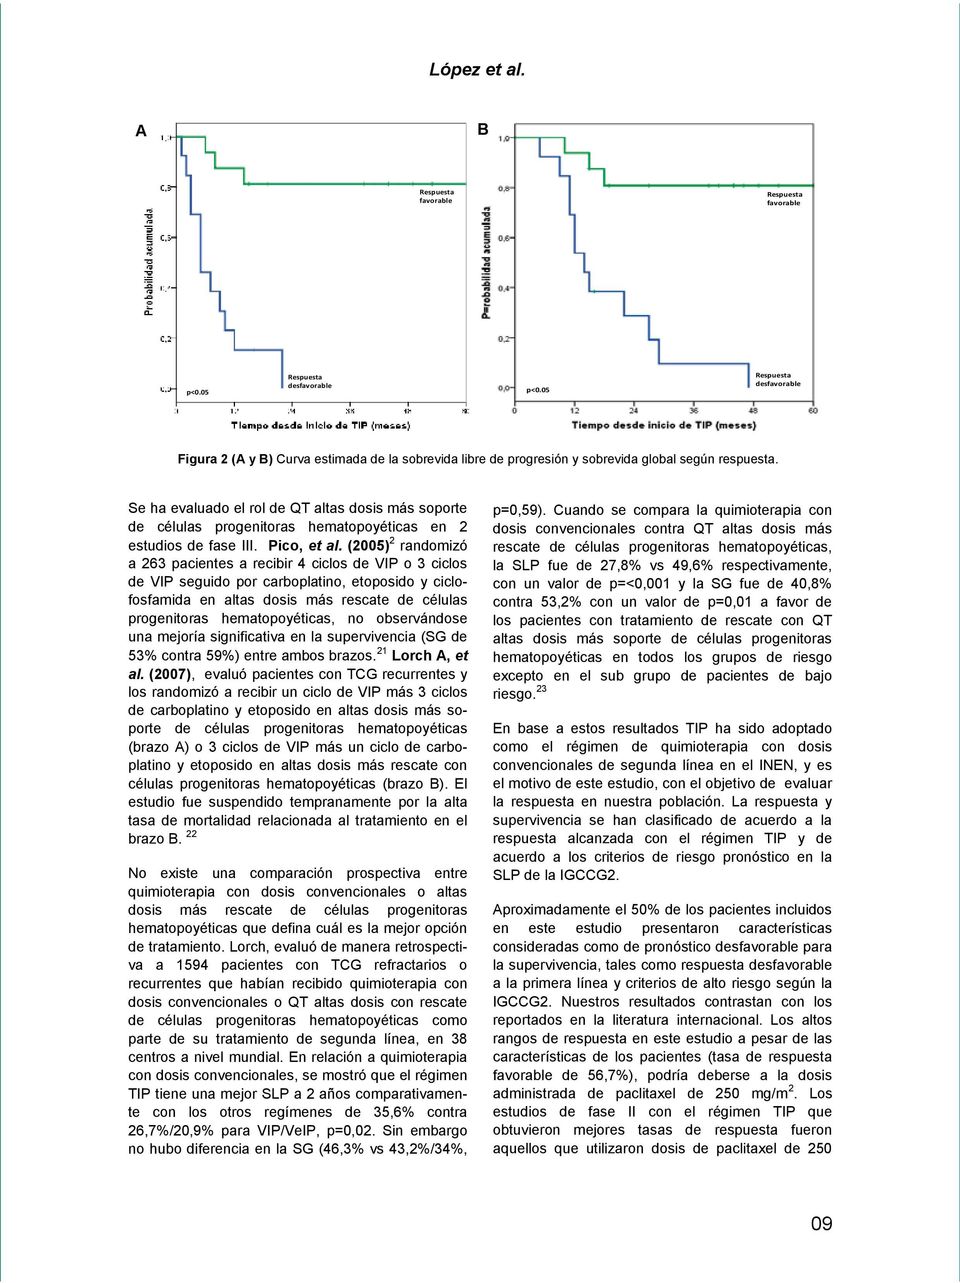 Se ha evaluado el rol de QT altas dosis más soporte de células progenitoras hematopoyéticas en 2 estudios de fase III. Pico, et al.